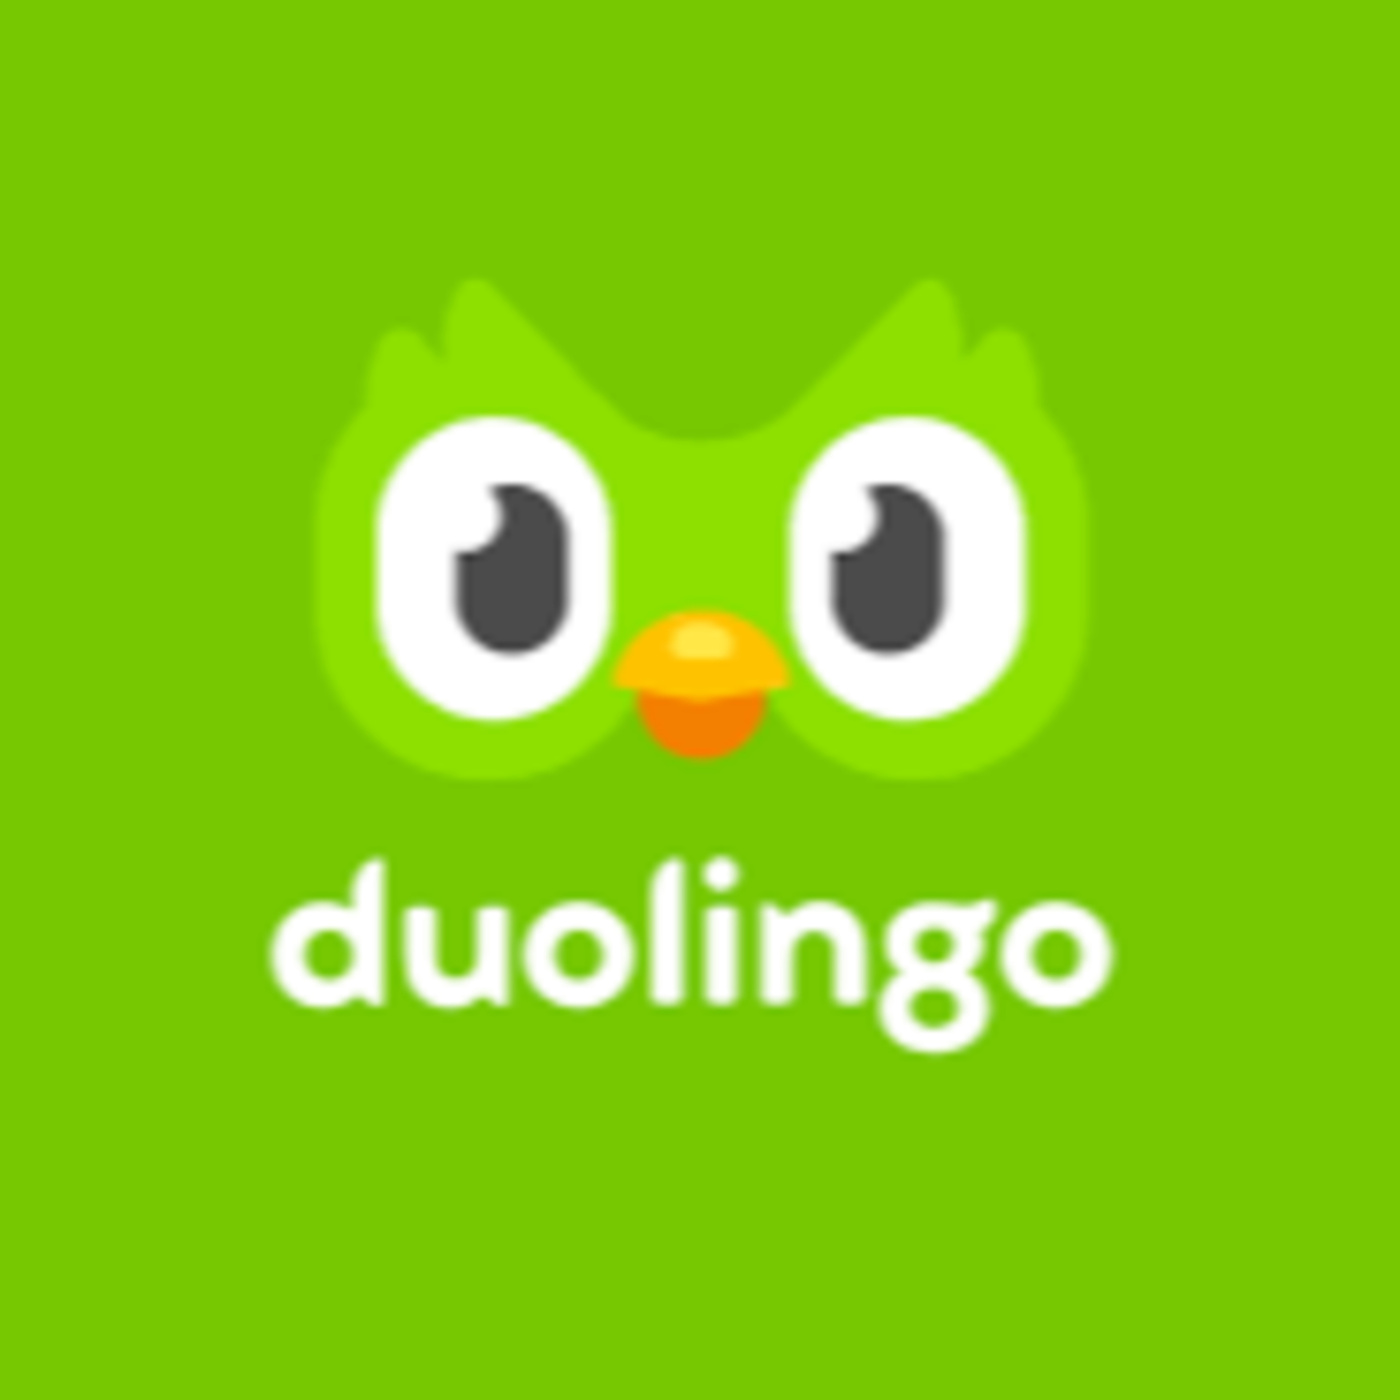 Duolingoの選考プロセスを書いたnoteが読み応えあった